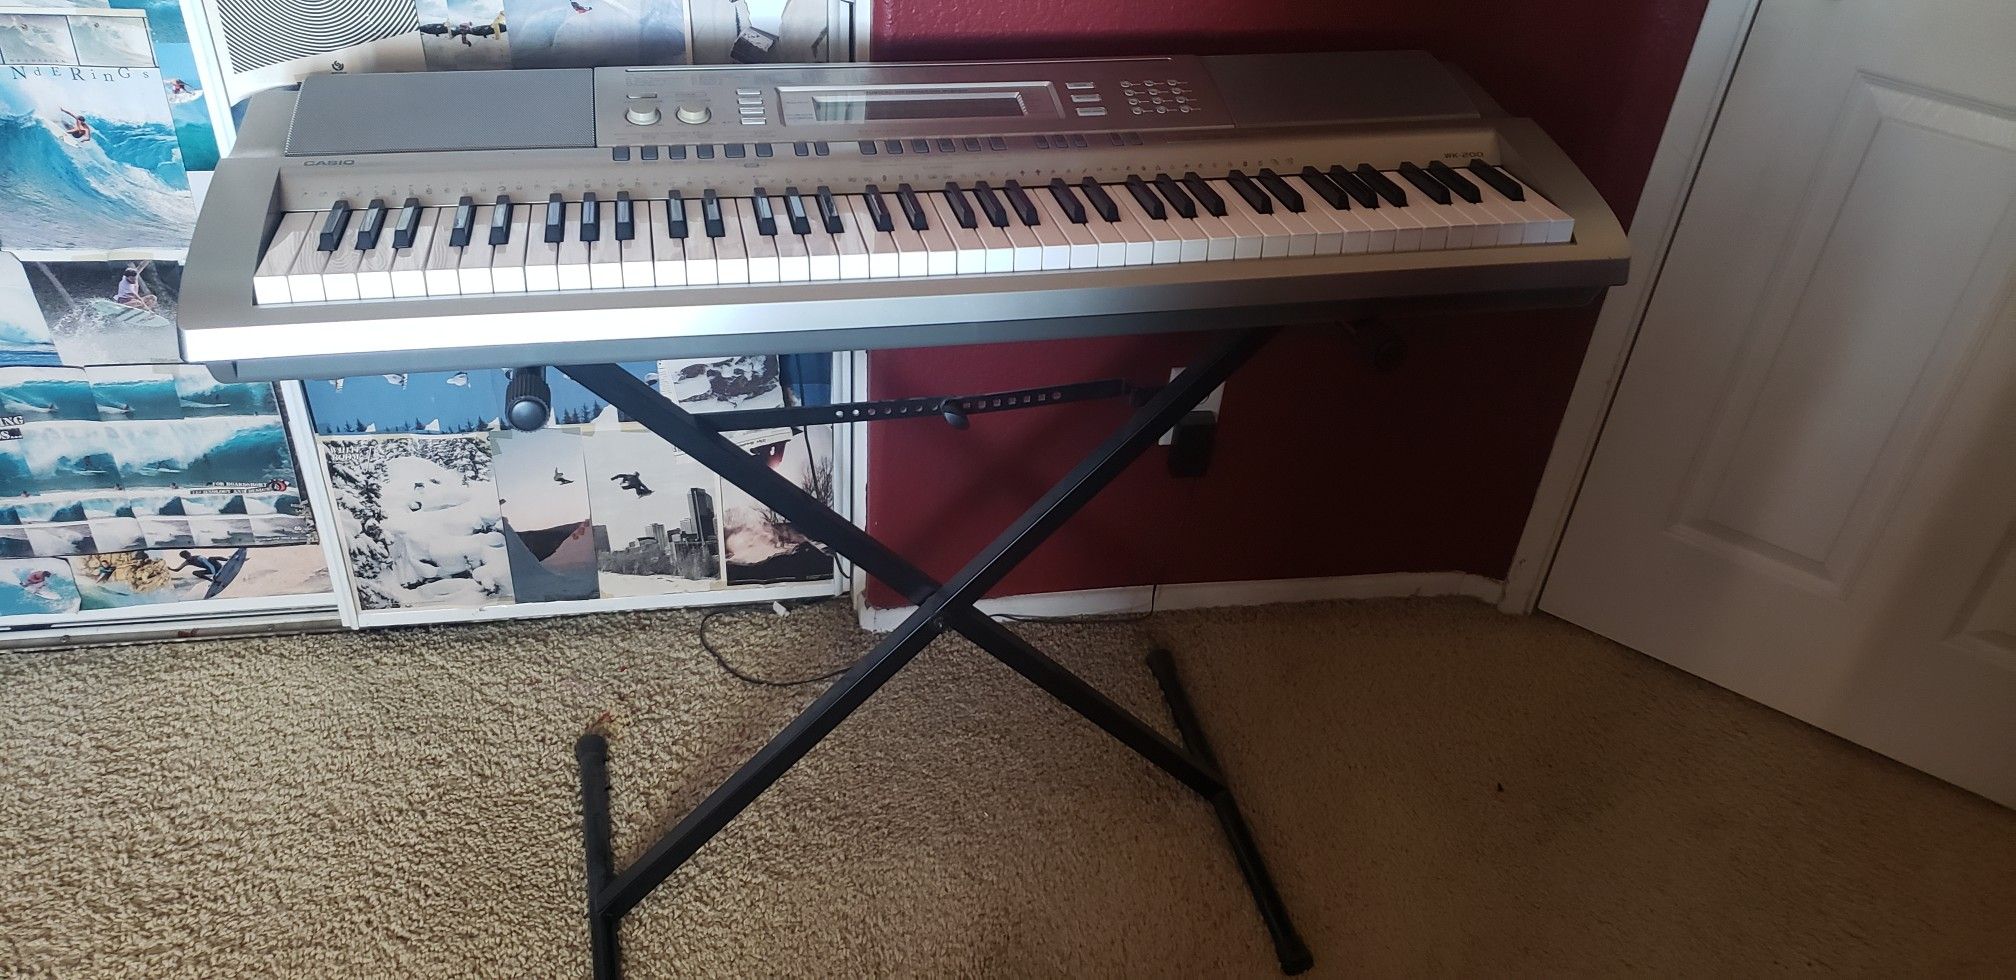 Casio WK-200 piano keyboard